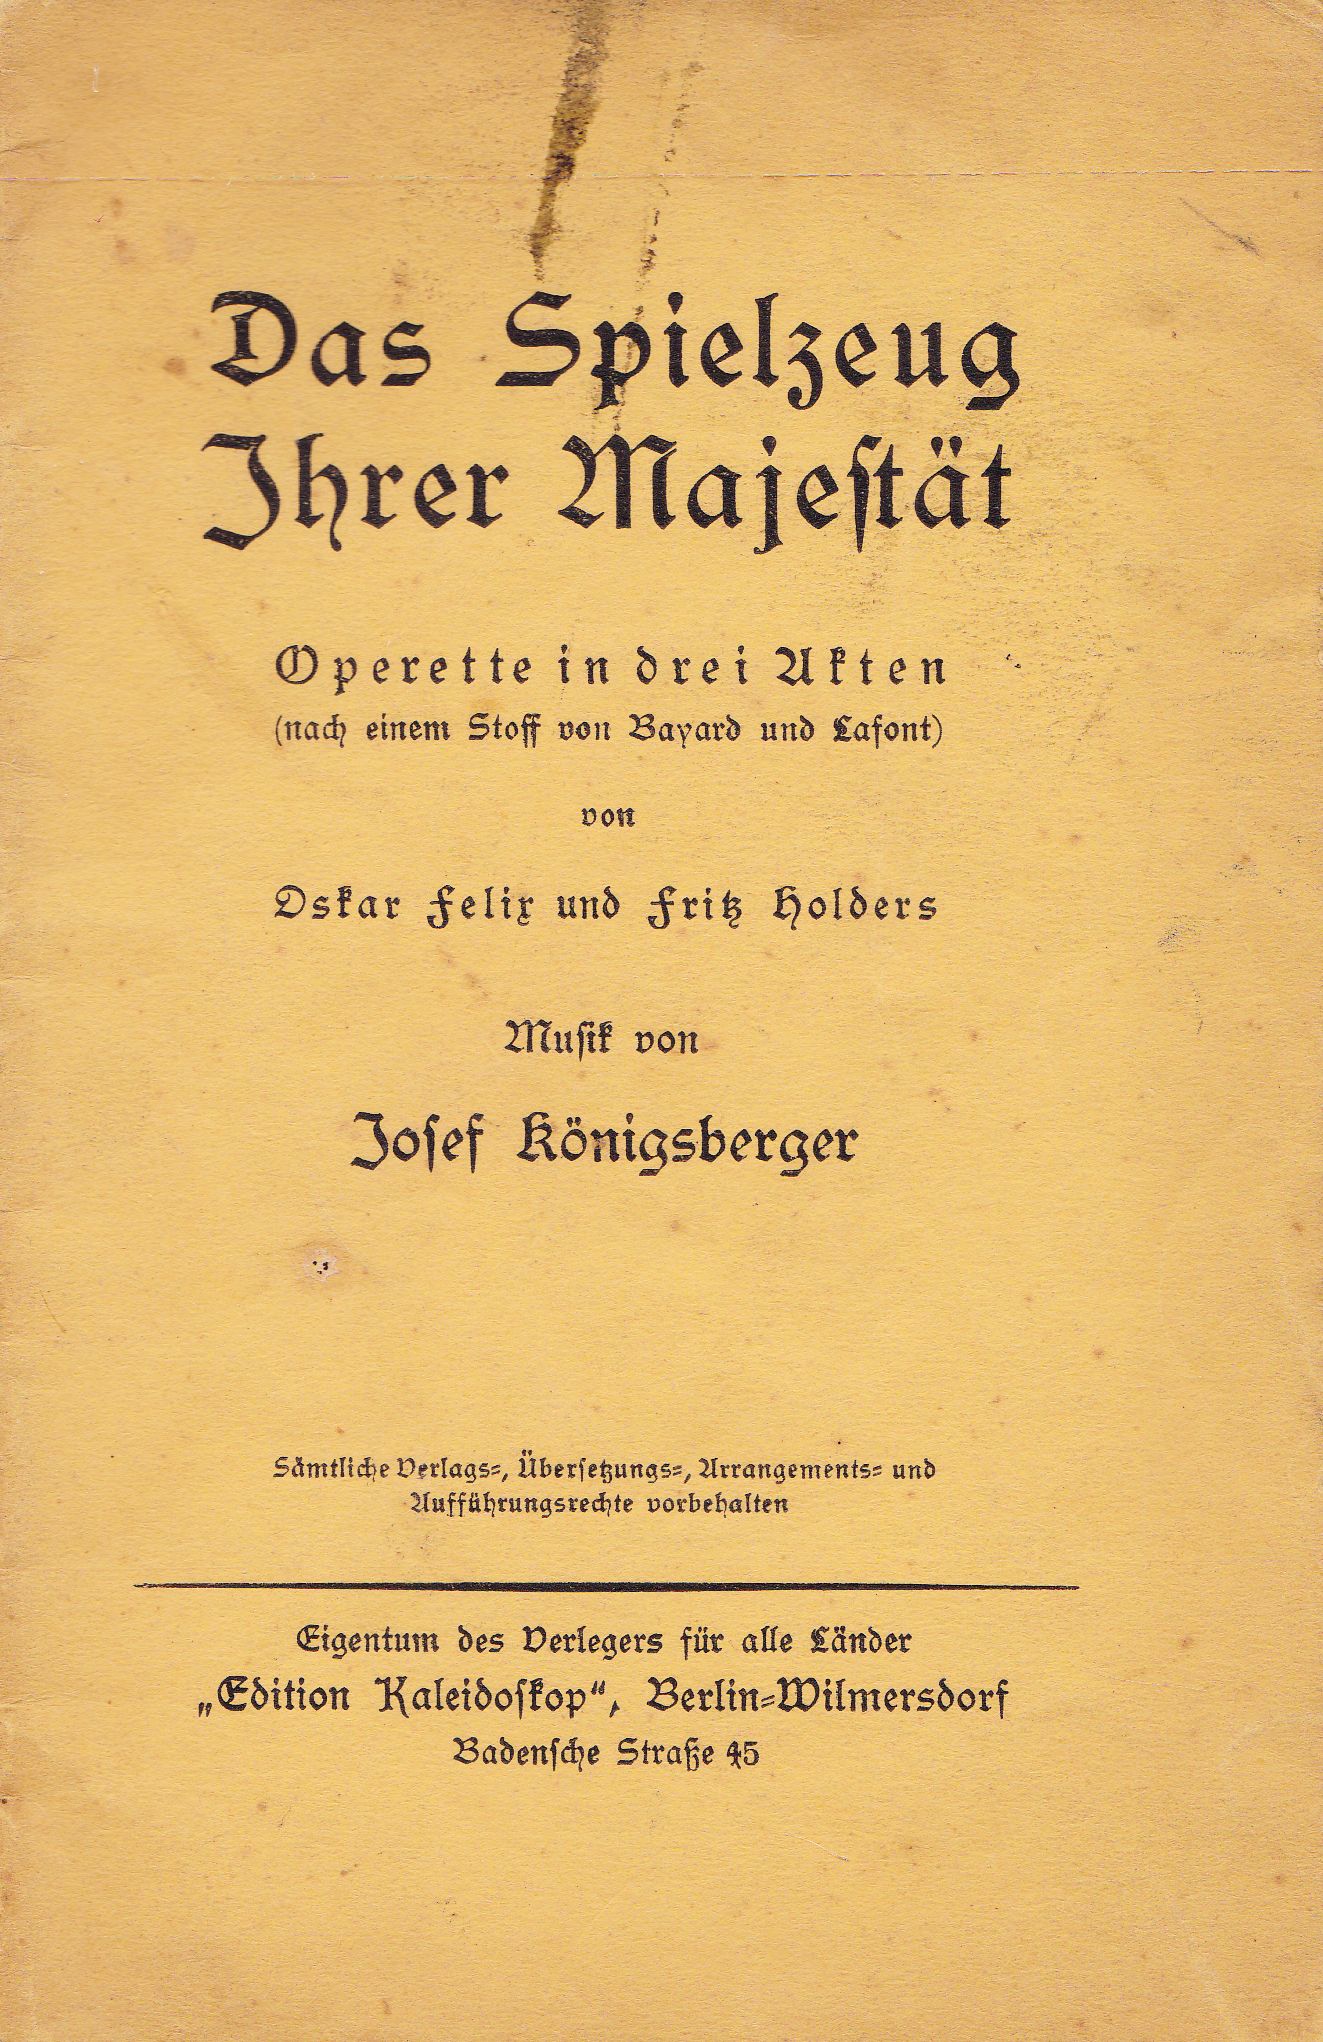 Felix, Oskar / Holders, Fritz  Das Spielzeug Ihrer Majestät. Operette in drei Akten (nach einem Stoff von Bayard und Lafont). 